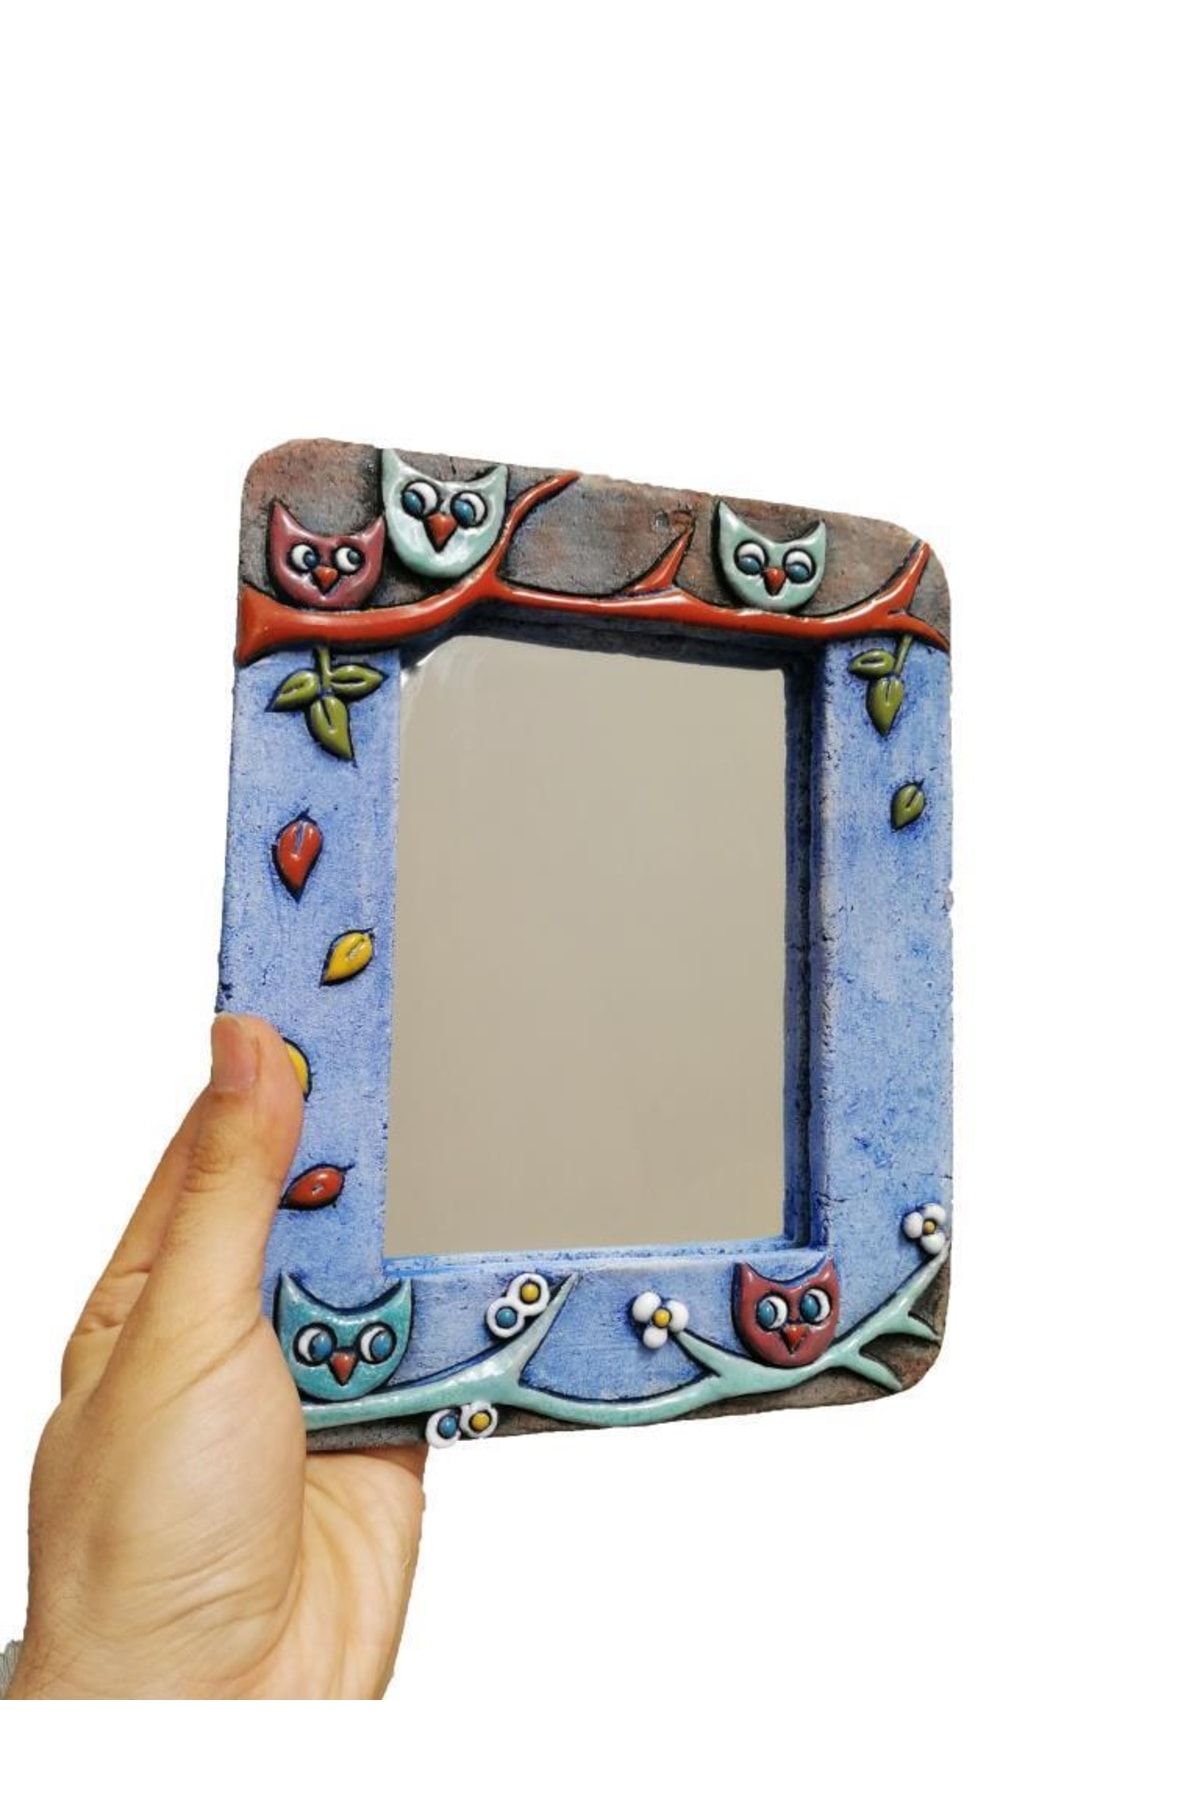 SUME Özel Tasarım Baykuş Süslemeli Seramik Çerçeve Ayna 14.5 X 10 Cm